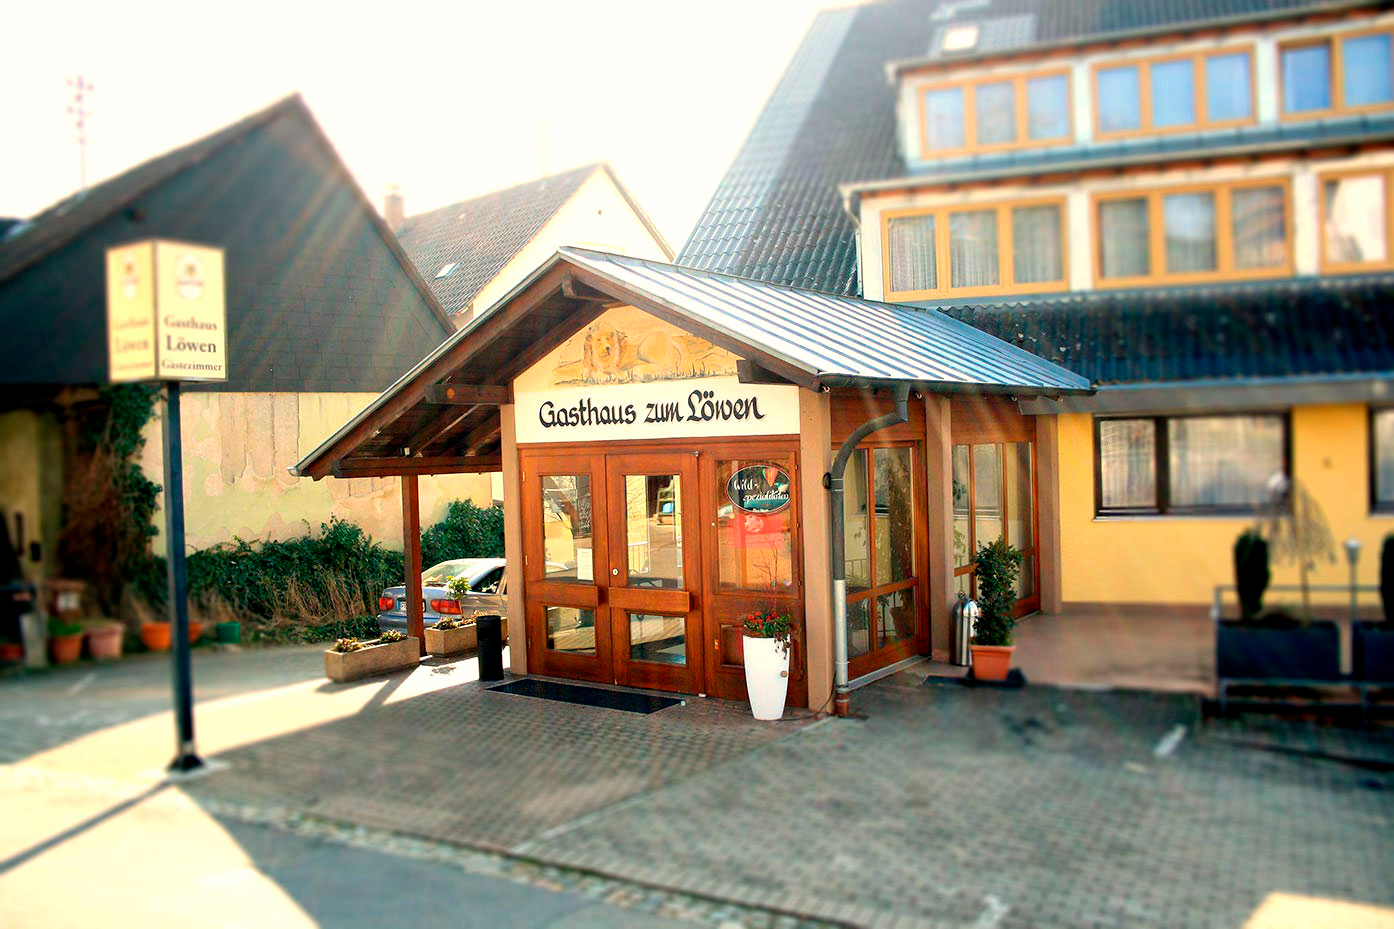 Gasthaus Pension Löwen, Dürleberg 9 in Freiburg